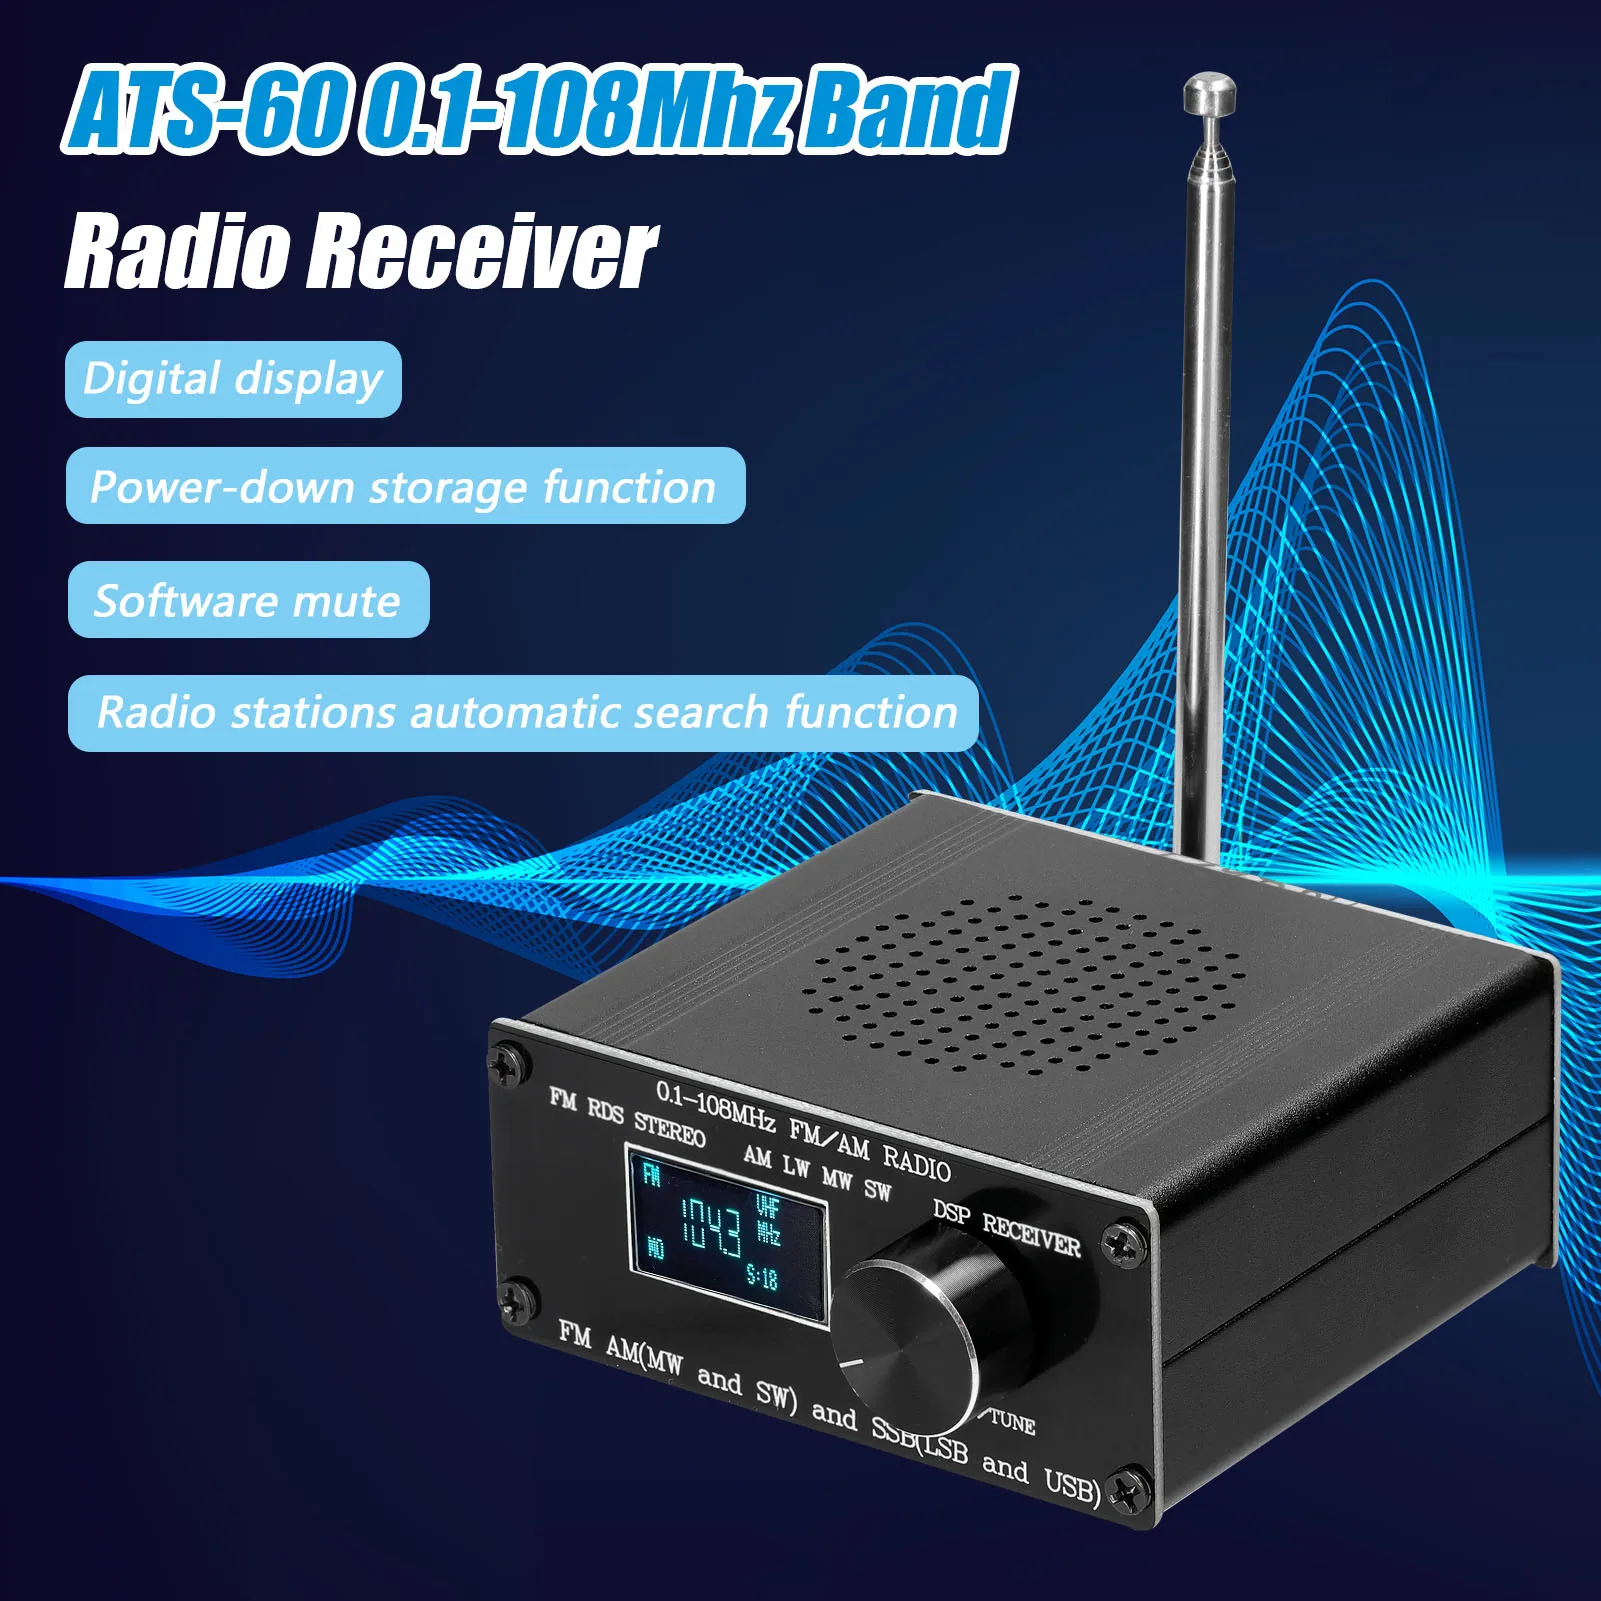 

ATS-60 0,1-108 МГц Диапазонный радиоприемник FM AM (MW & SW) SSB (LSB & USB), охватывающий коммерческие любительские радиочастоты